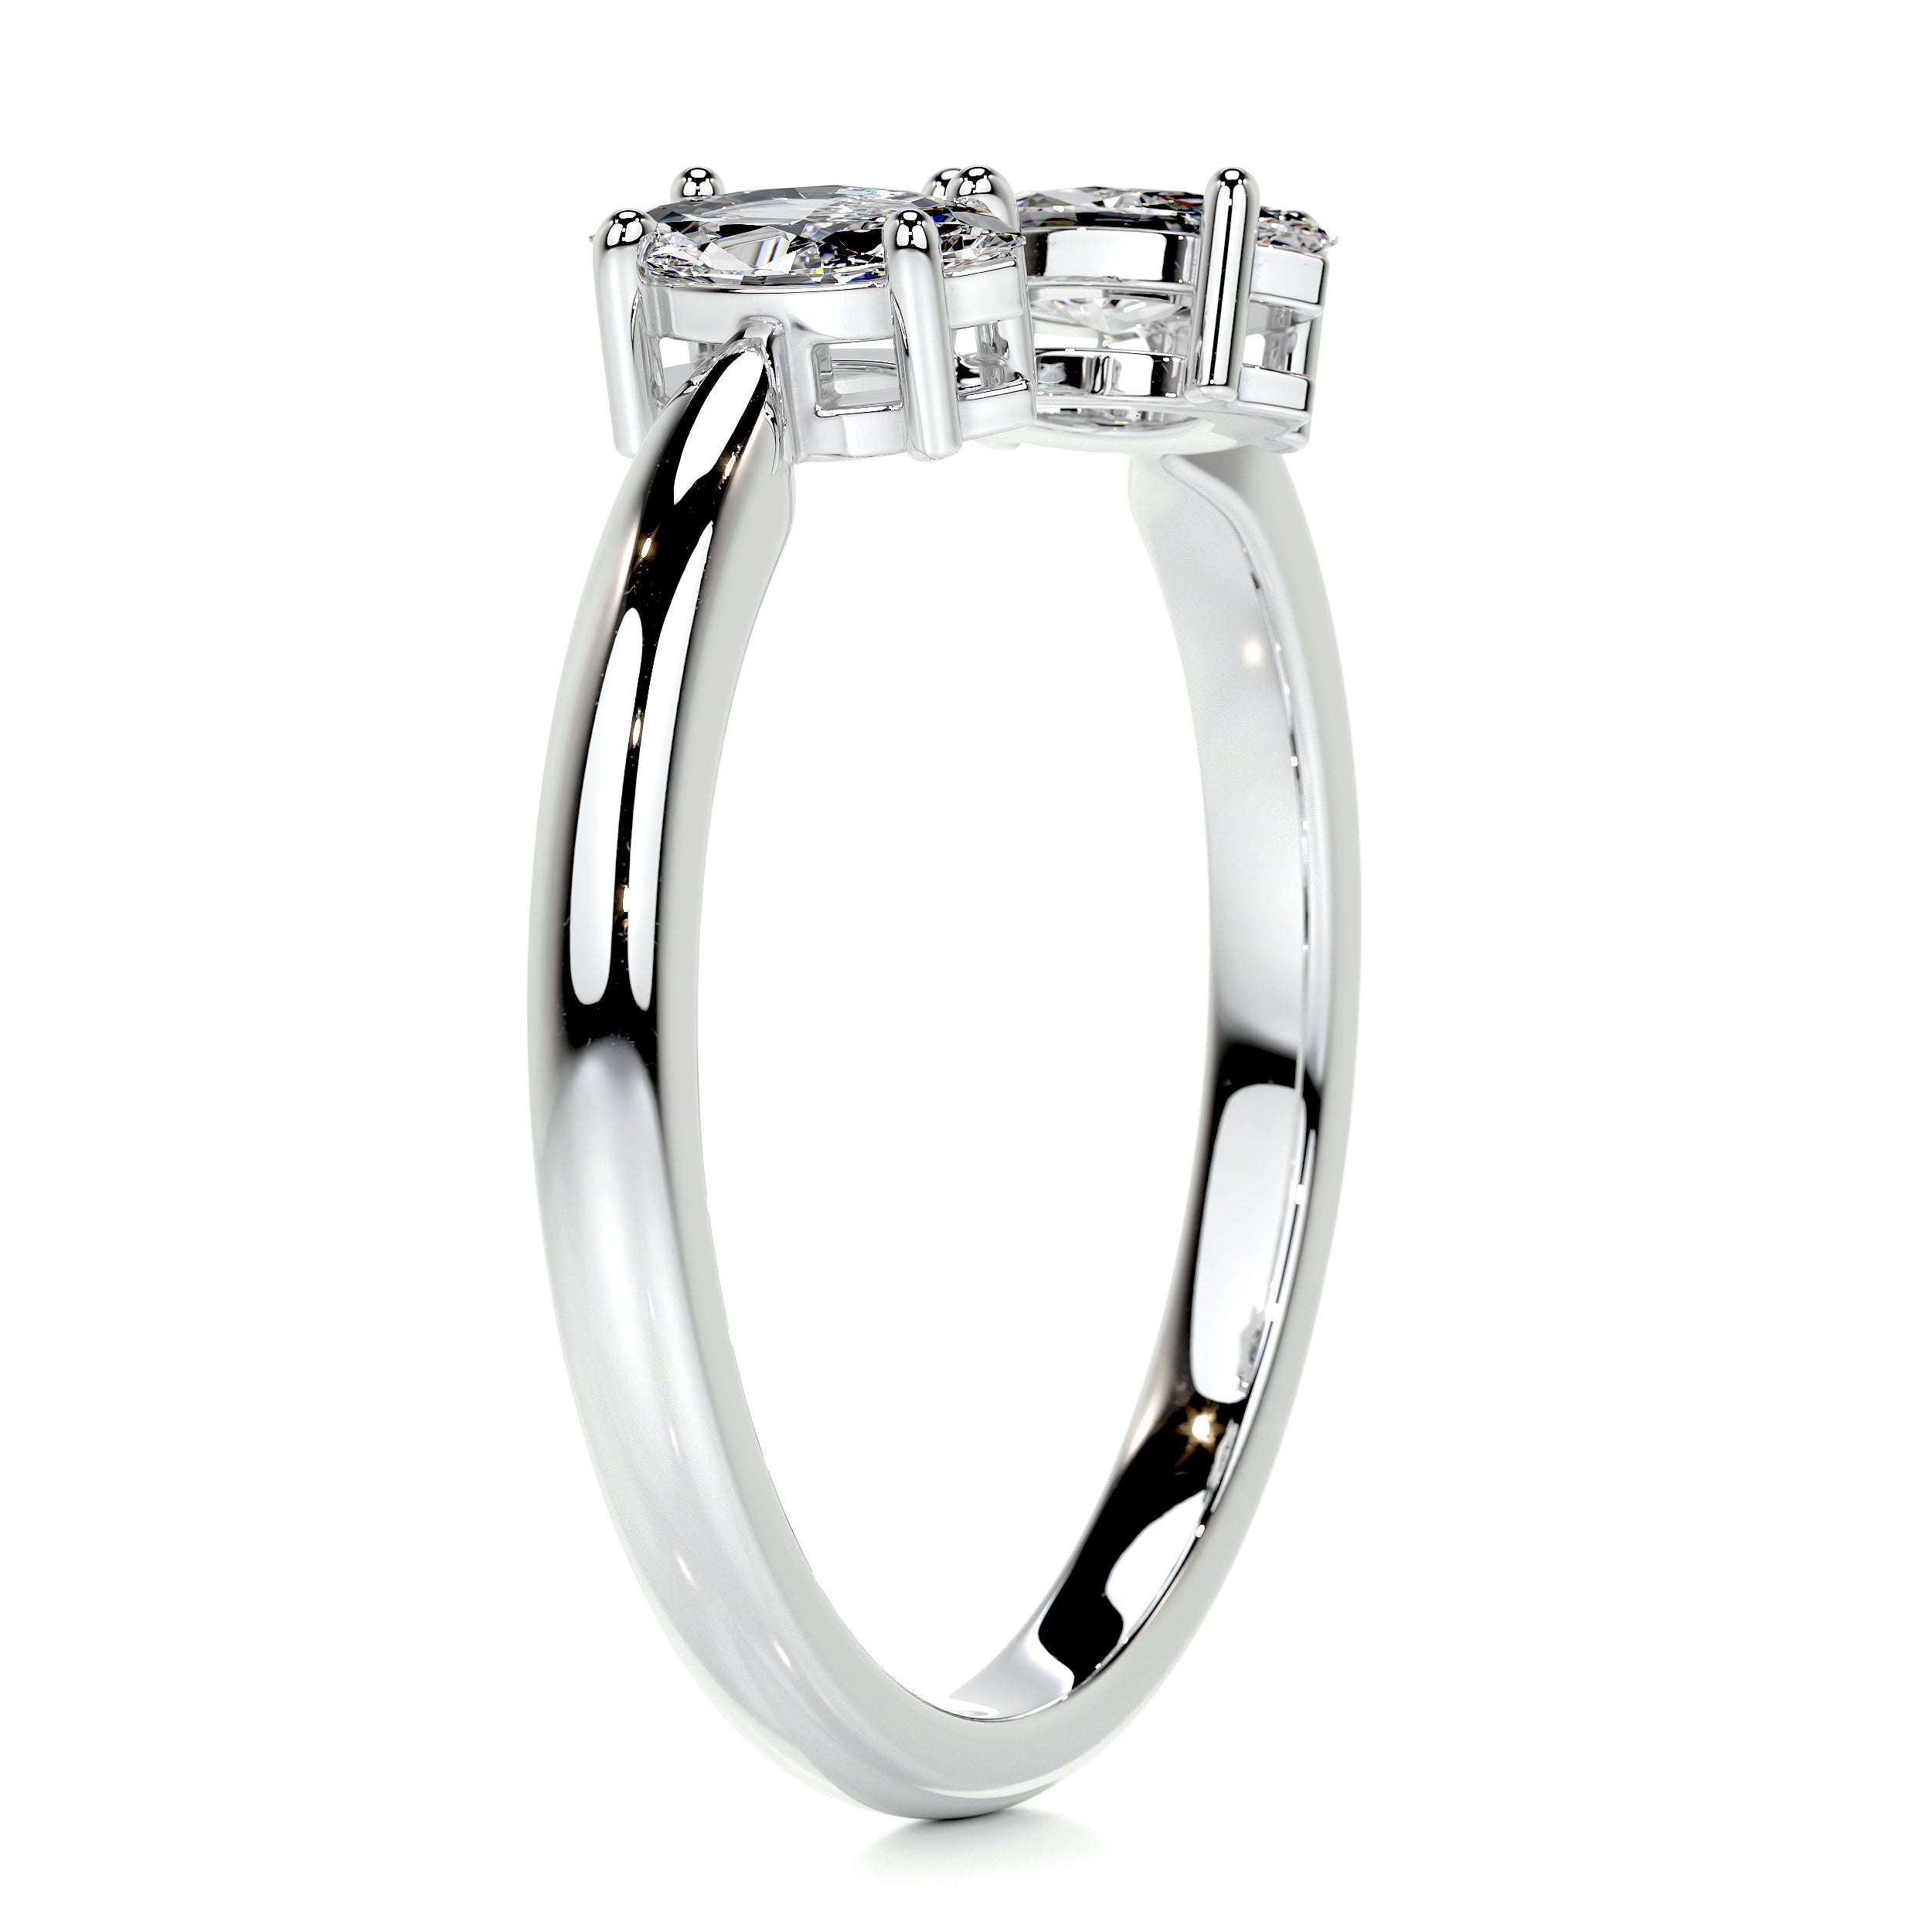 Celine Fashion Ring   (0.36 Carat) -18K White Gold